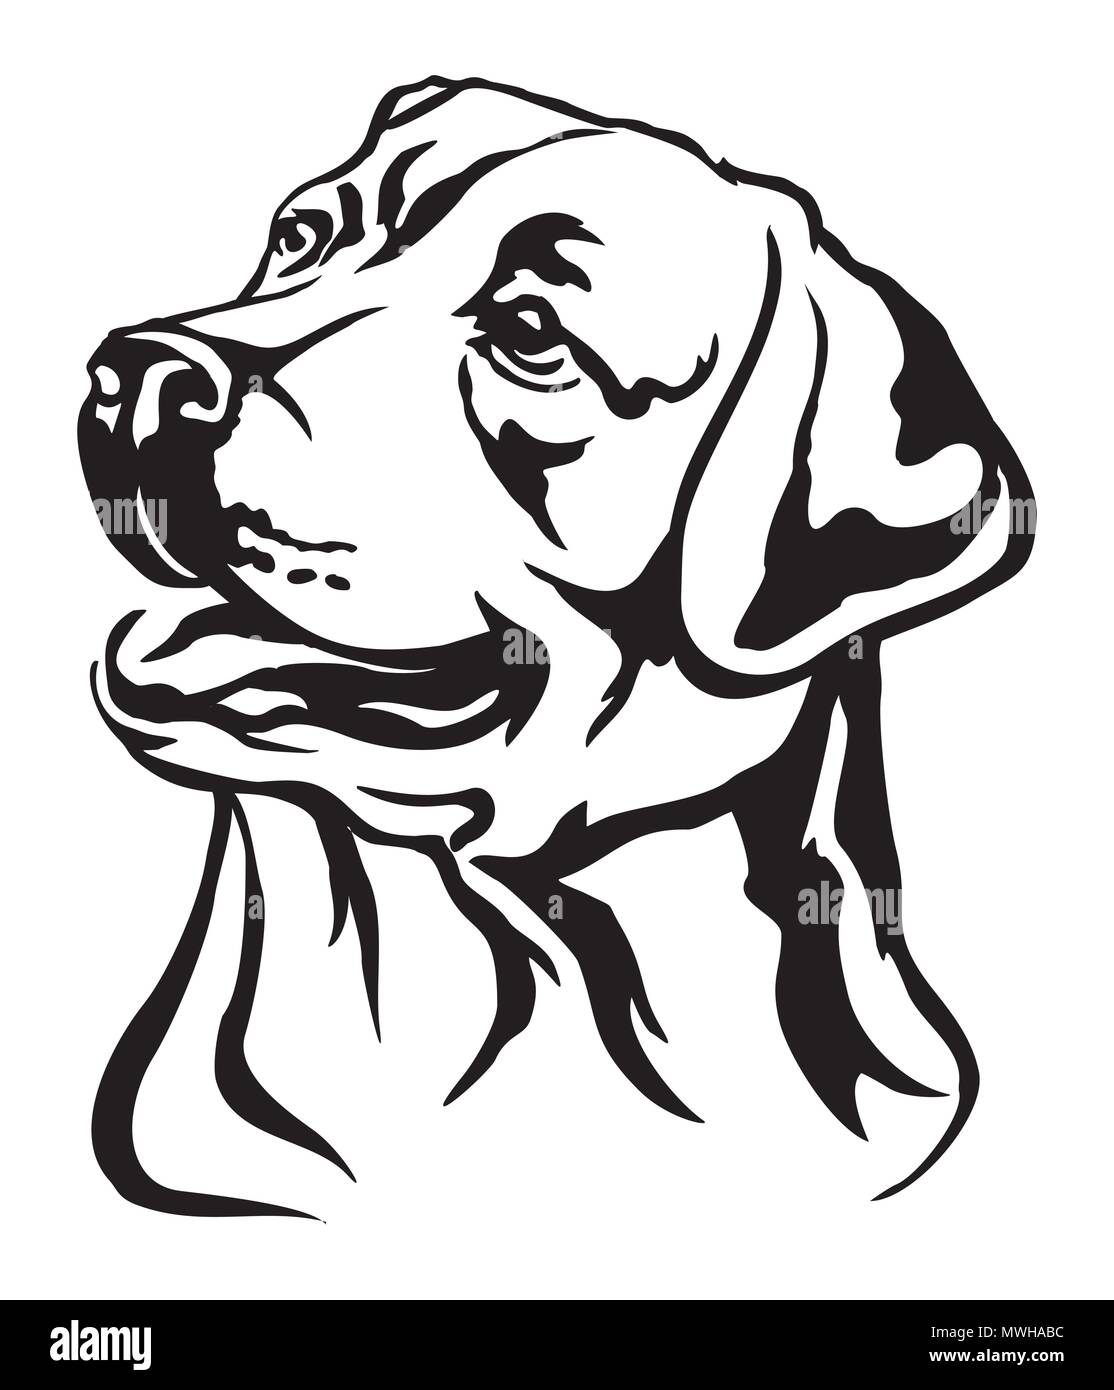 Dekorative Portrait von Hund Labrador Retriever, Vektor isoliert Abbildung in schwarz auf weißem Hintergrund Stock Vektor